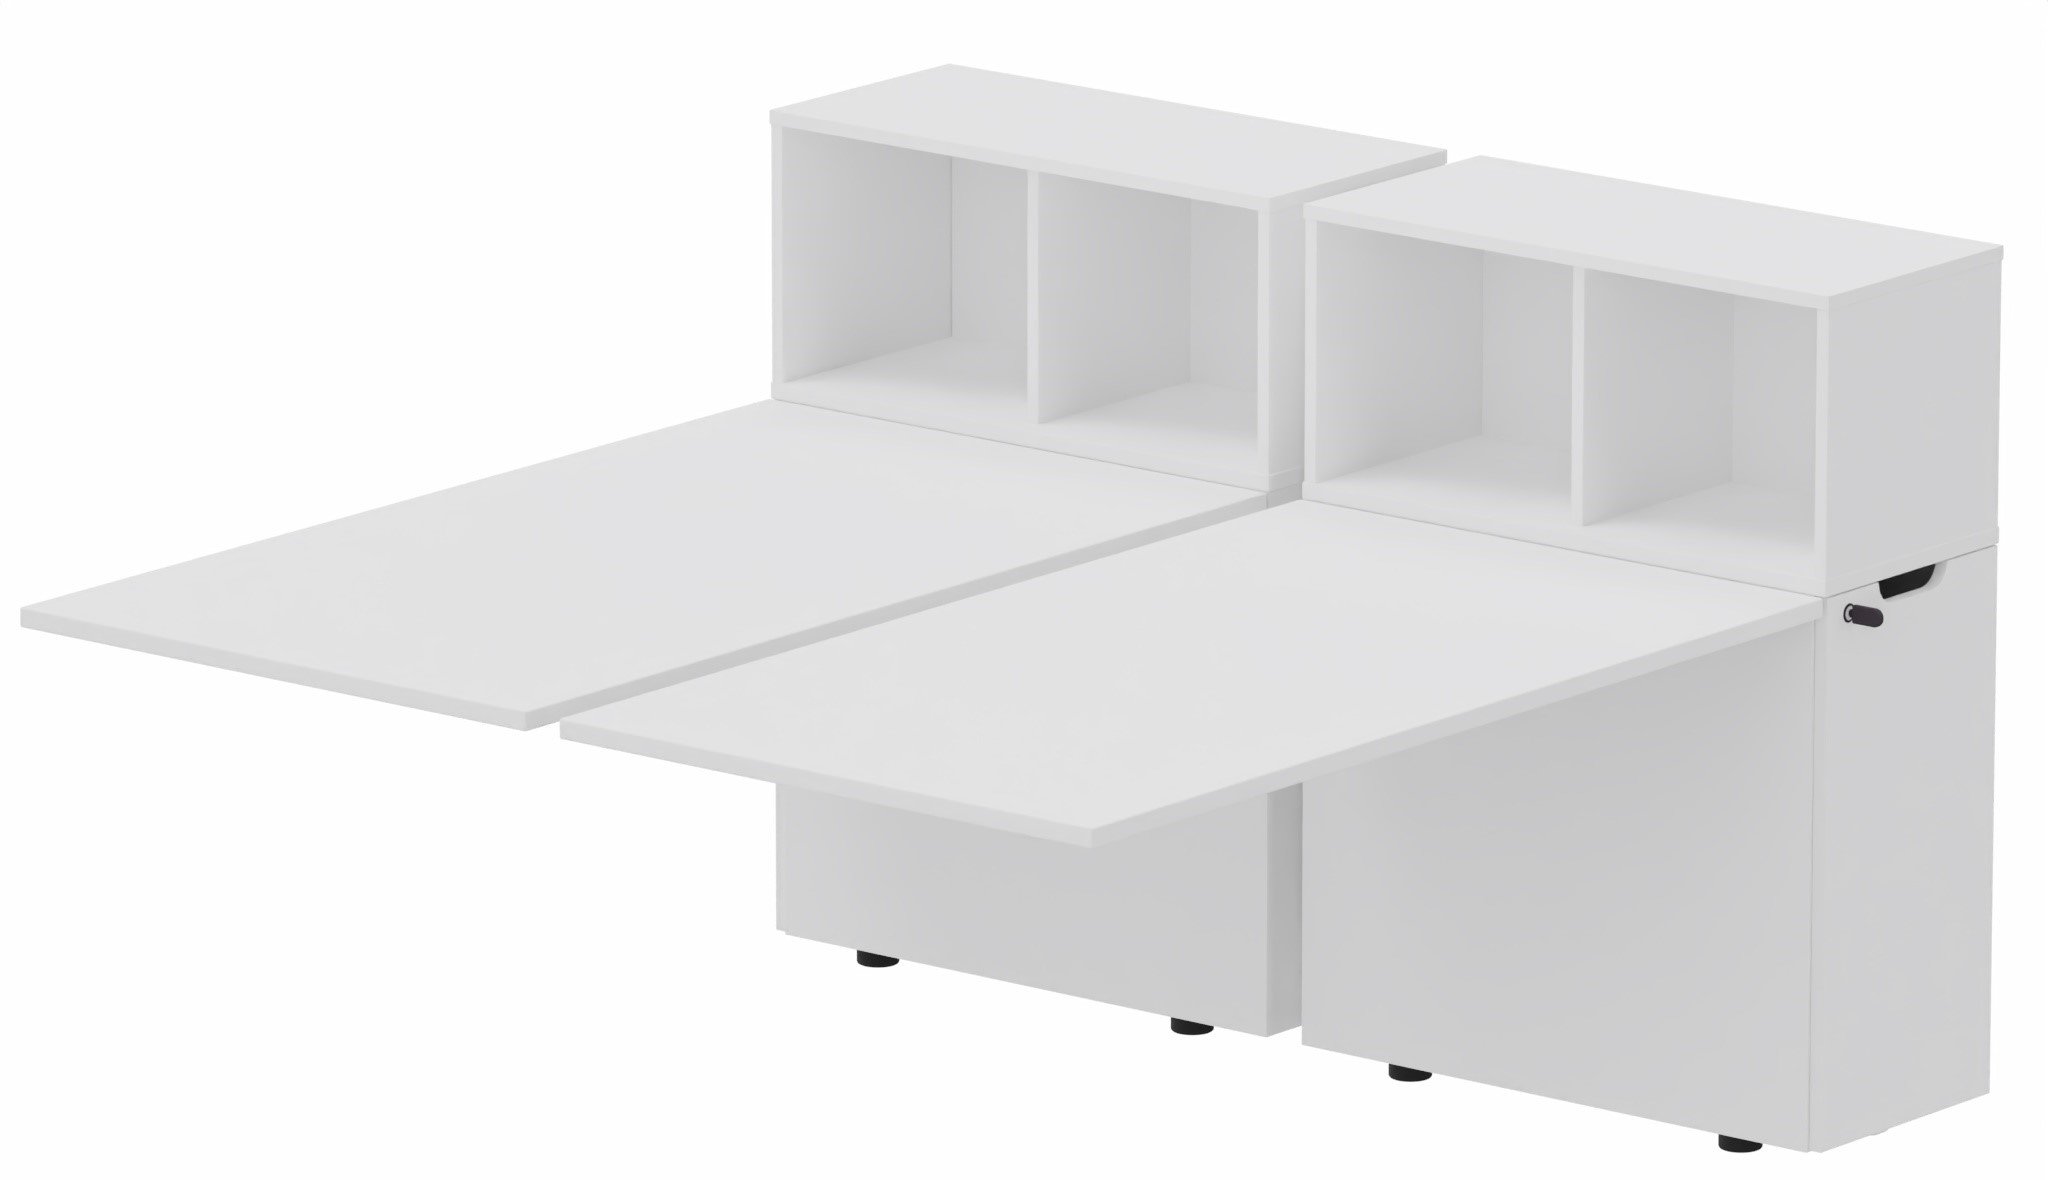 K8 Bench suivant avec niche sur rangement personnel 196x80cm encombrement 196x165cm, plateau blanc, structure blanc